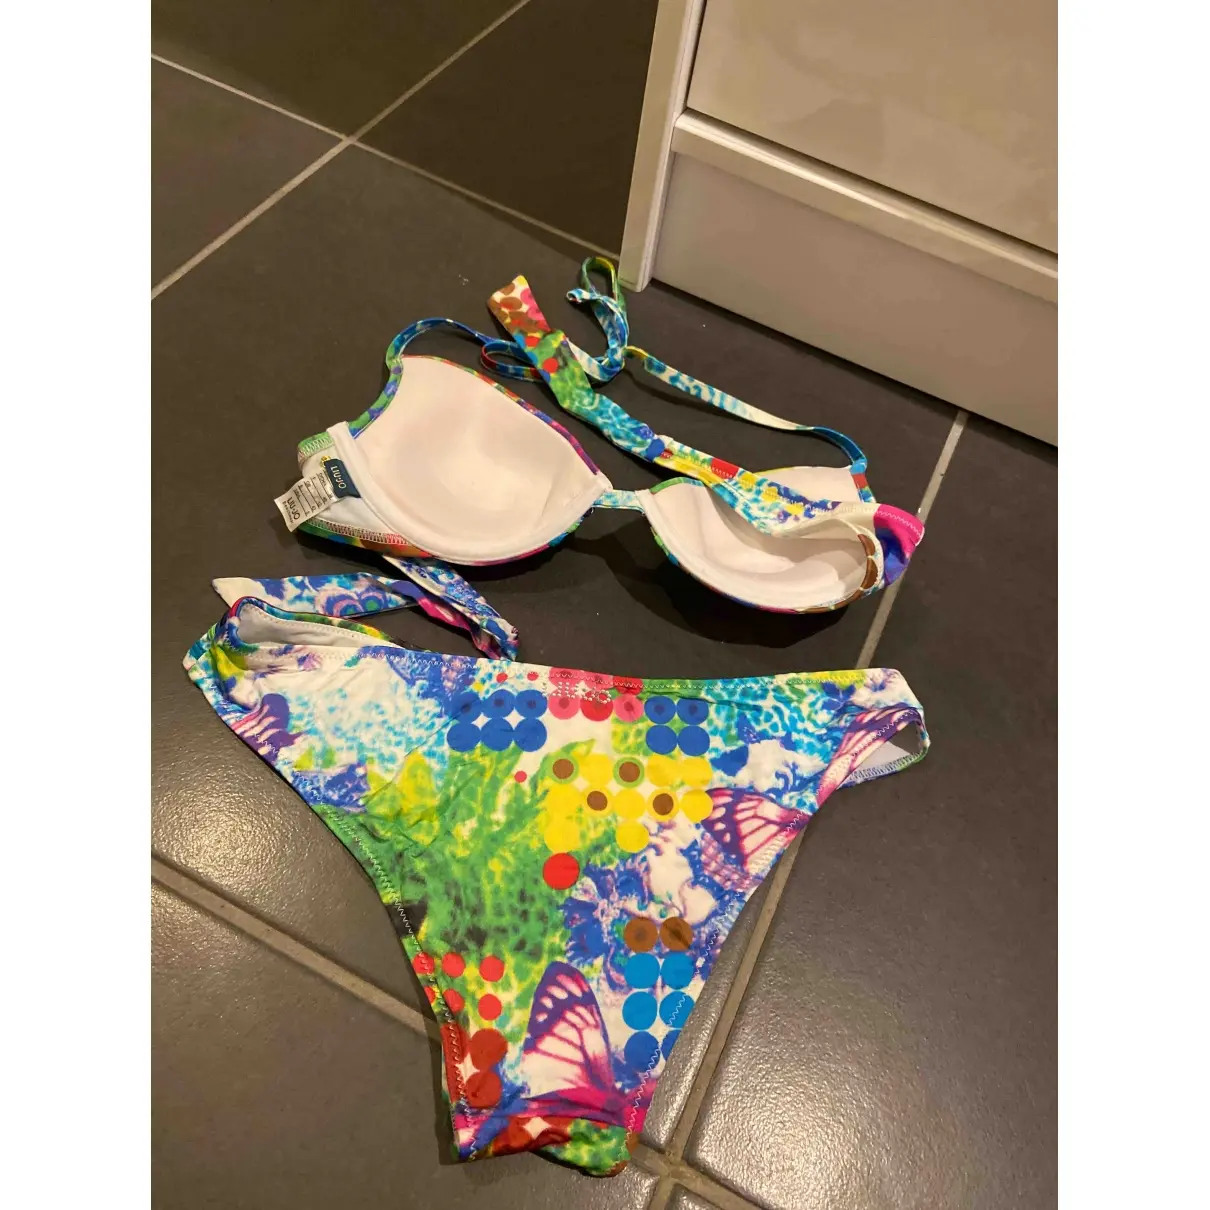 Liu.Jo Two-piece swimsuit for sale